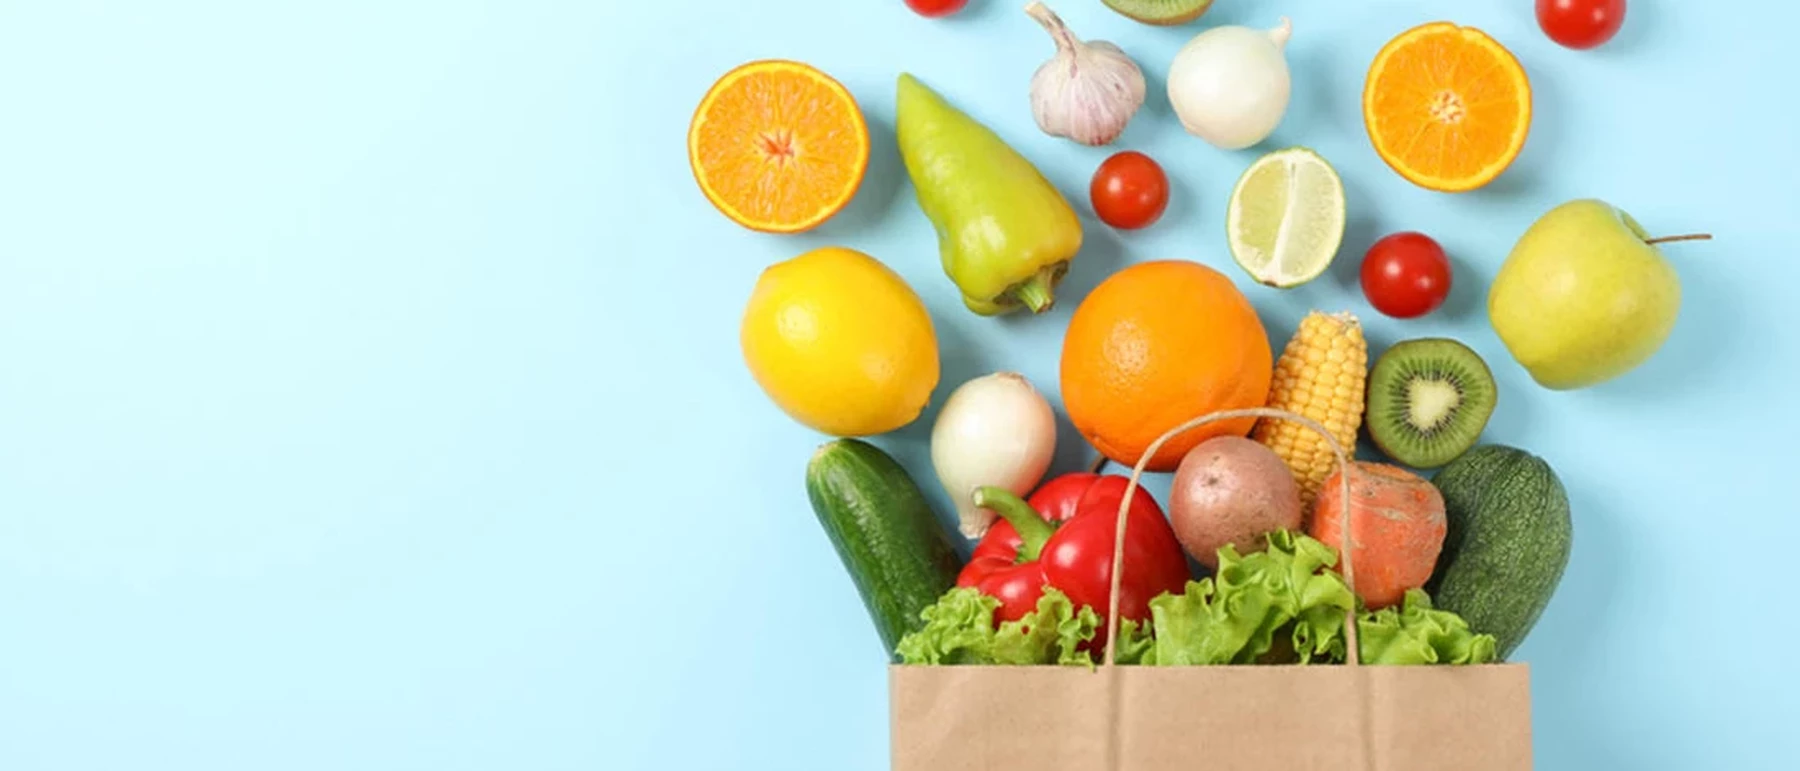 Wil je goedkoop en gezond eten? Met deze 8 simpele tips lukt het jou